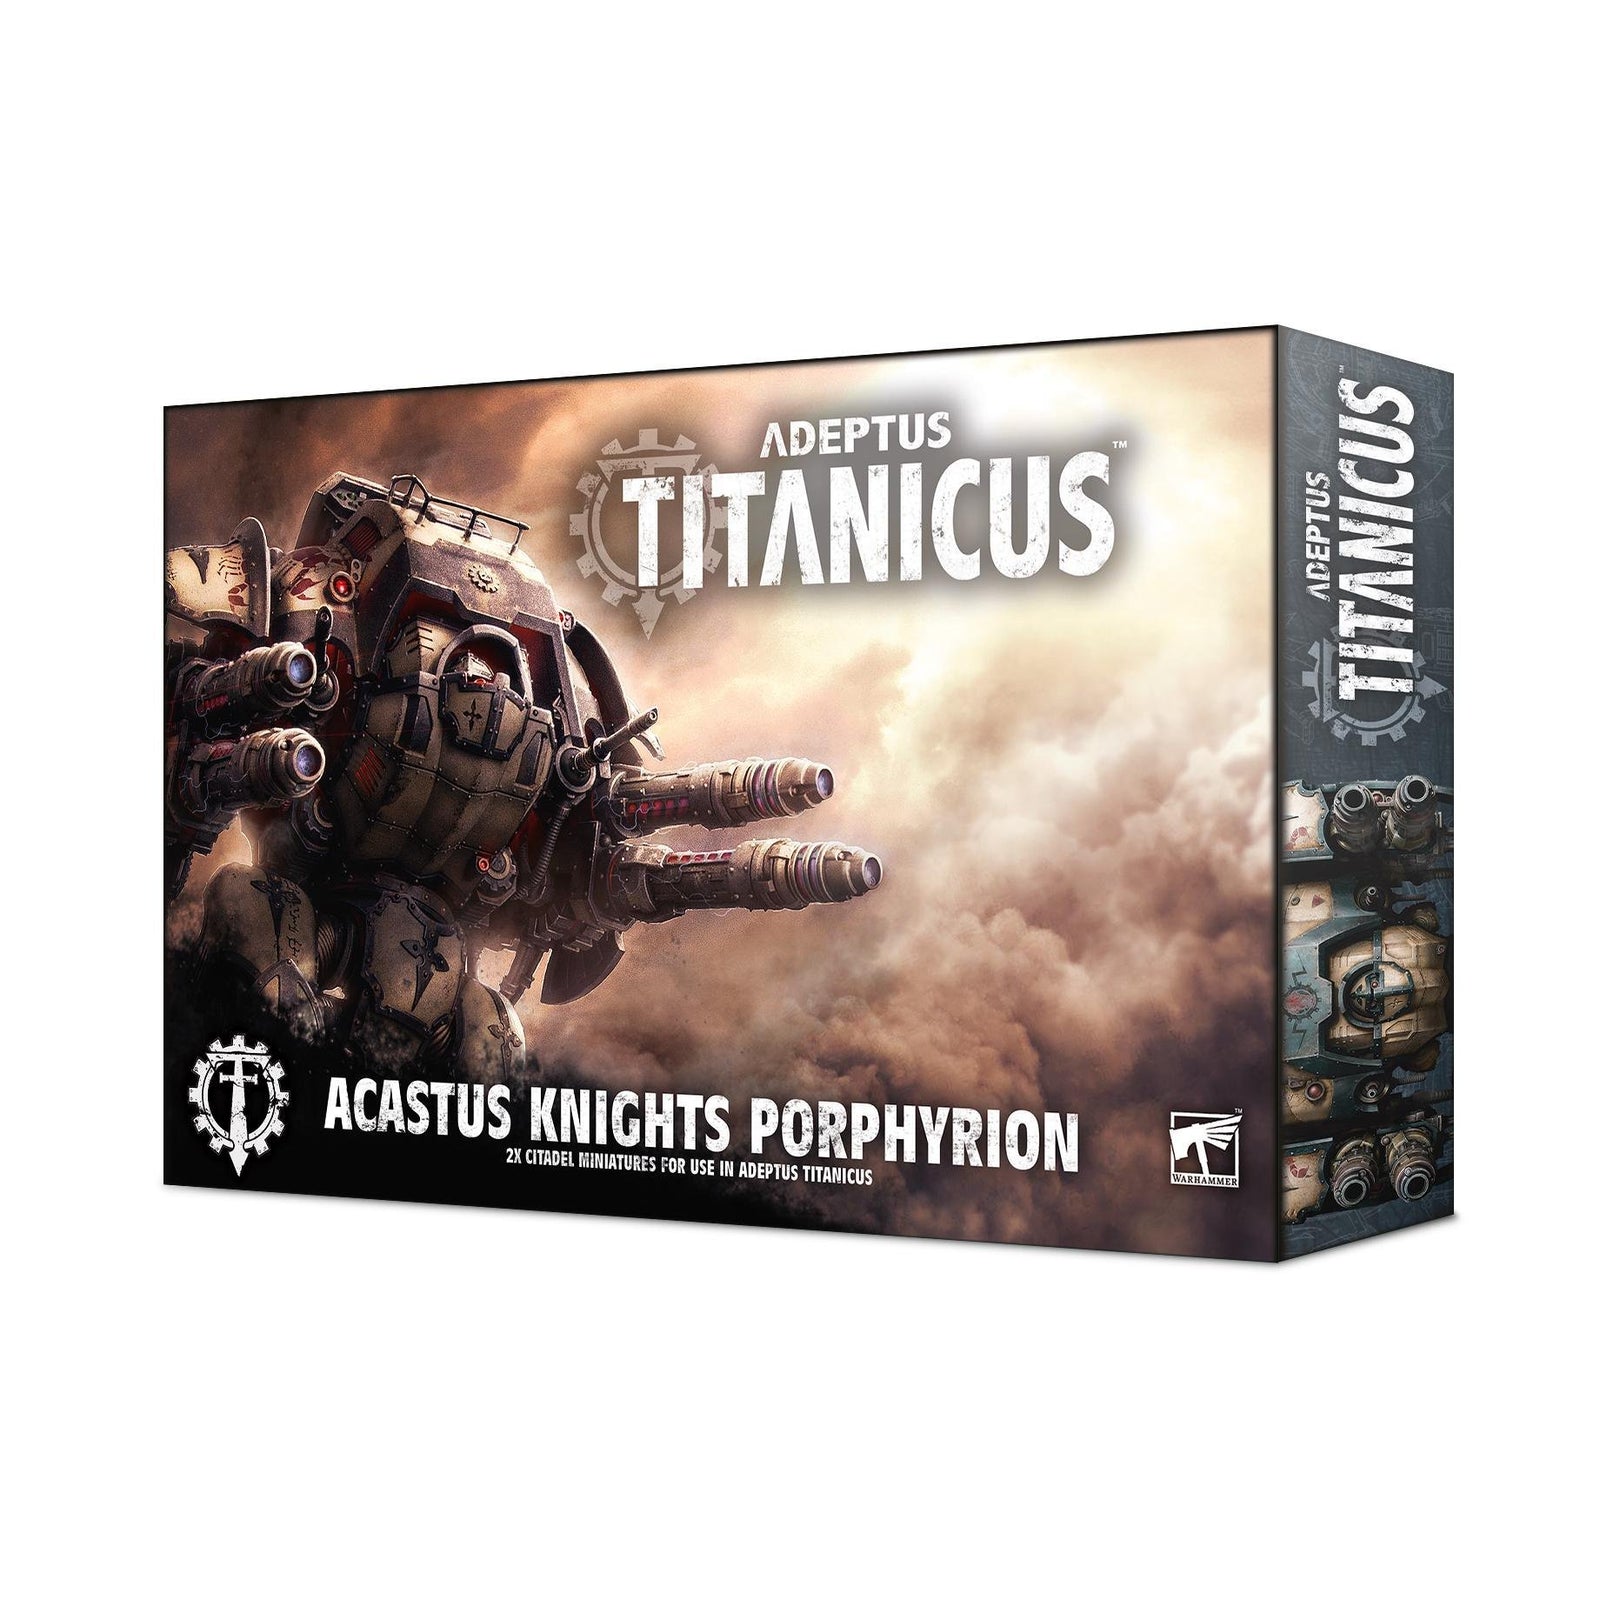 Adeptus Titanicus: Acastus Knights Porphyrion